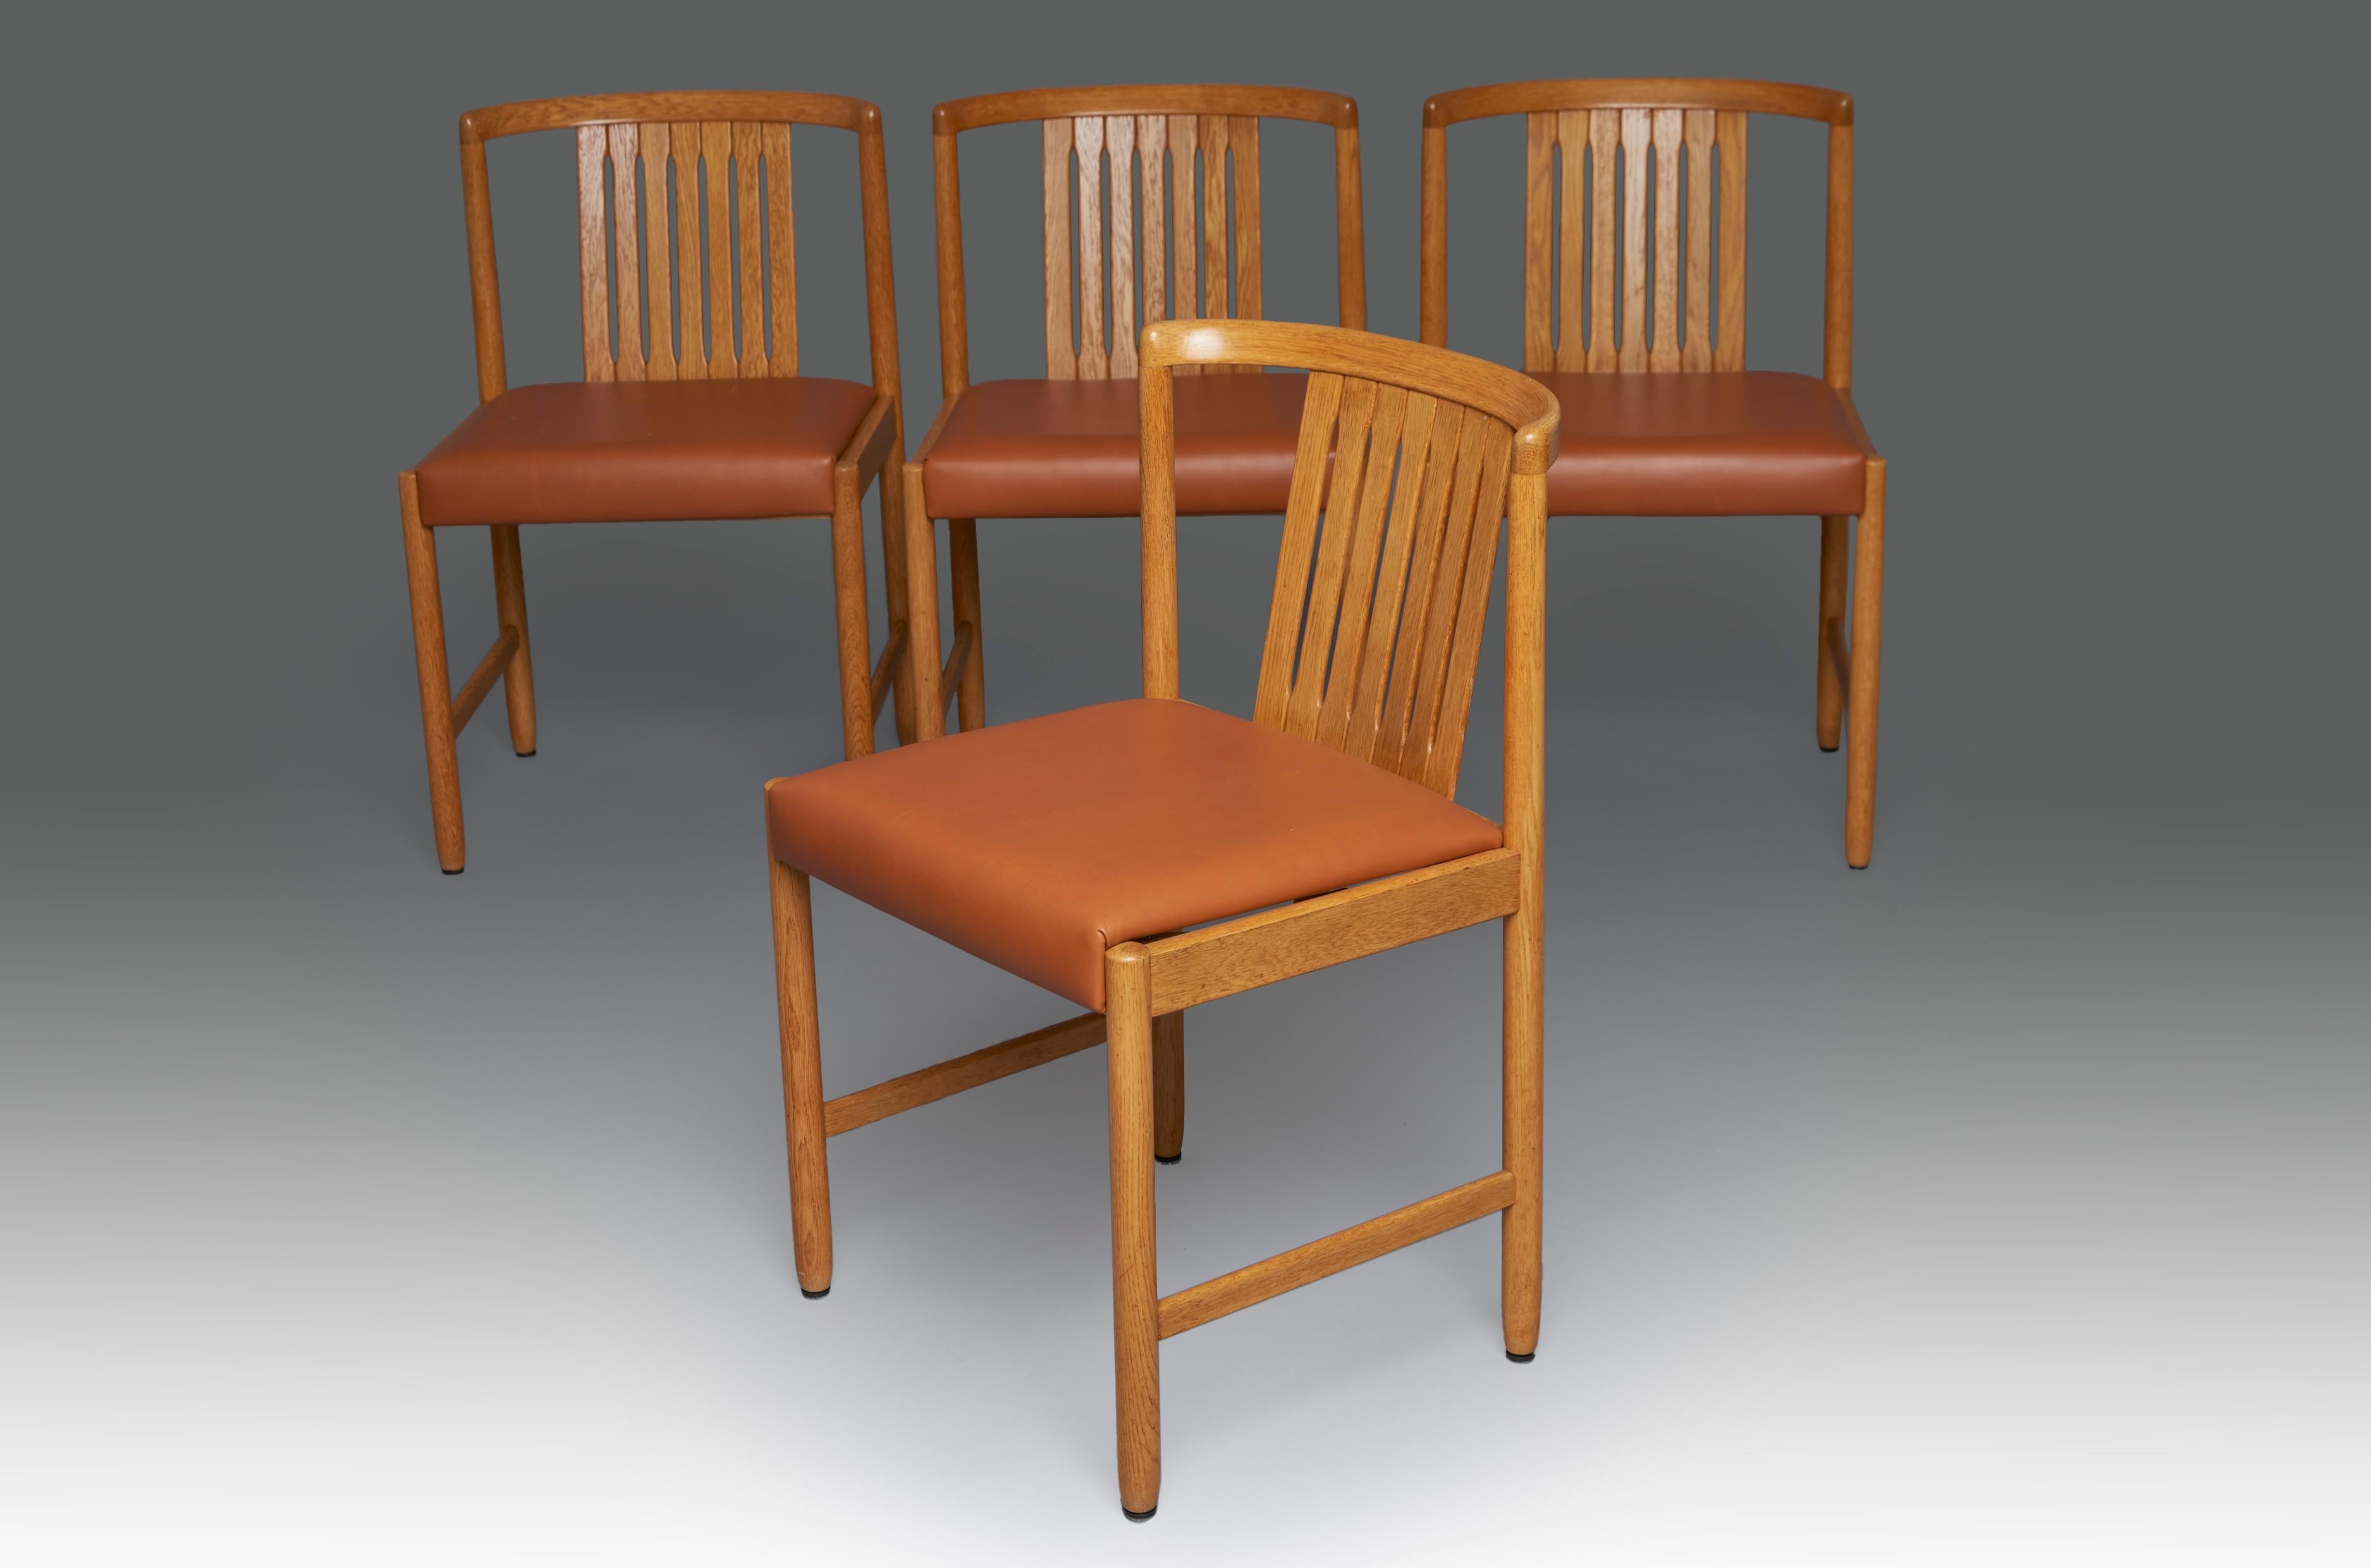 Set aus vier Stühlen aus Teakholz und hellbraunem Leder, entworfen von Bertil Fridhagen für Bodafors. Schweden, 1960er Jahre.

Perfekter Zustand, restauriert und neu gepolstert. Die Bilder zeigen nur 4 der 6 verfügbaren Einheiten

Bertil Fridhagen